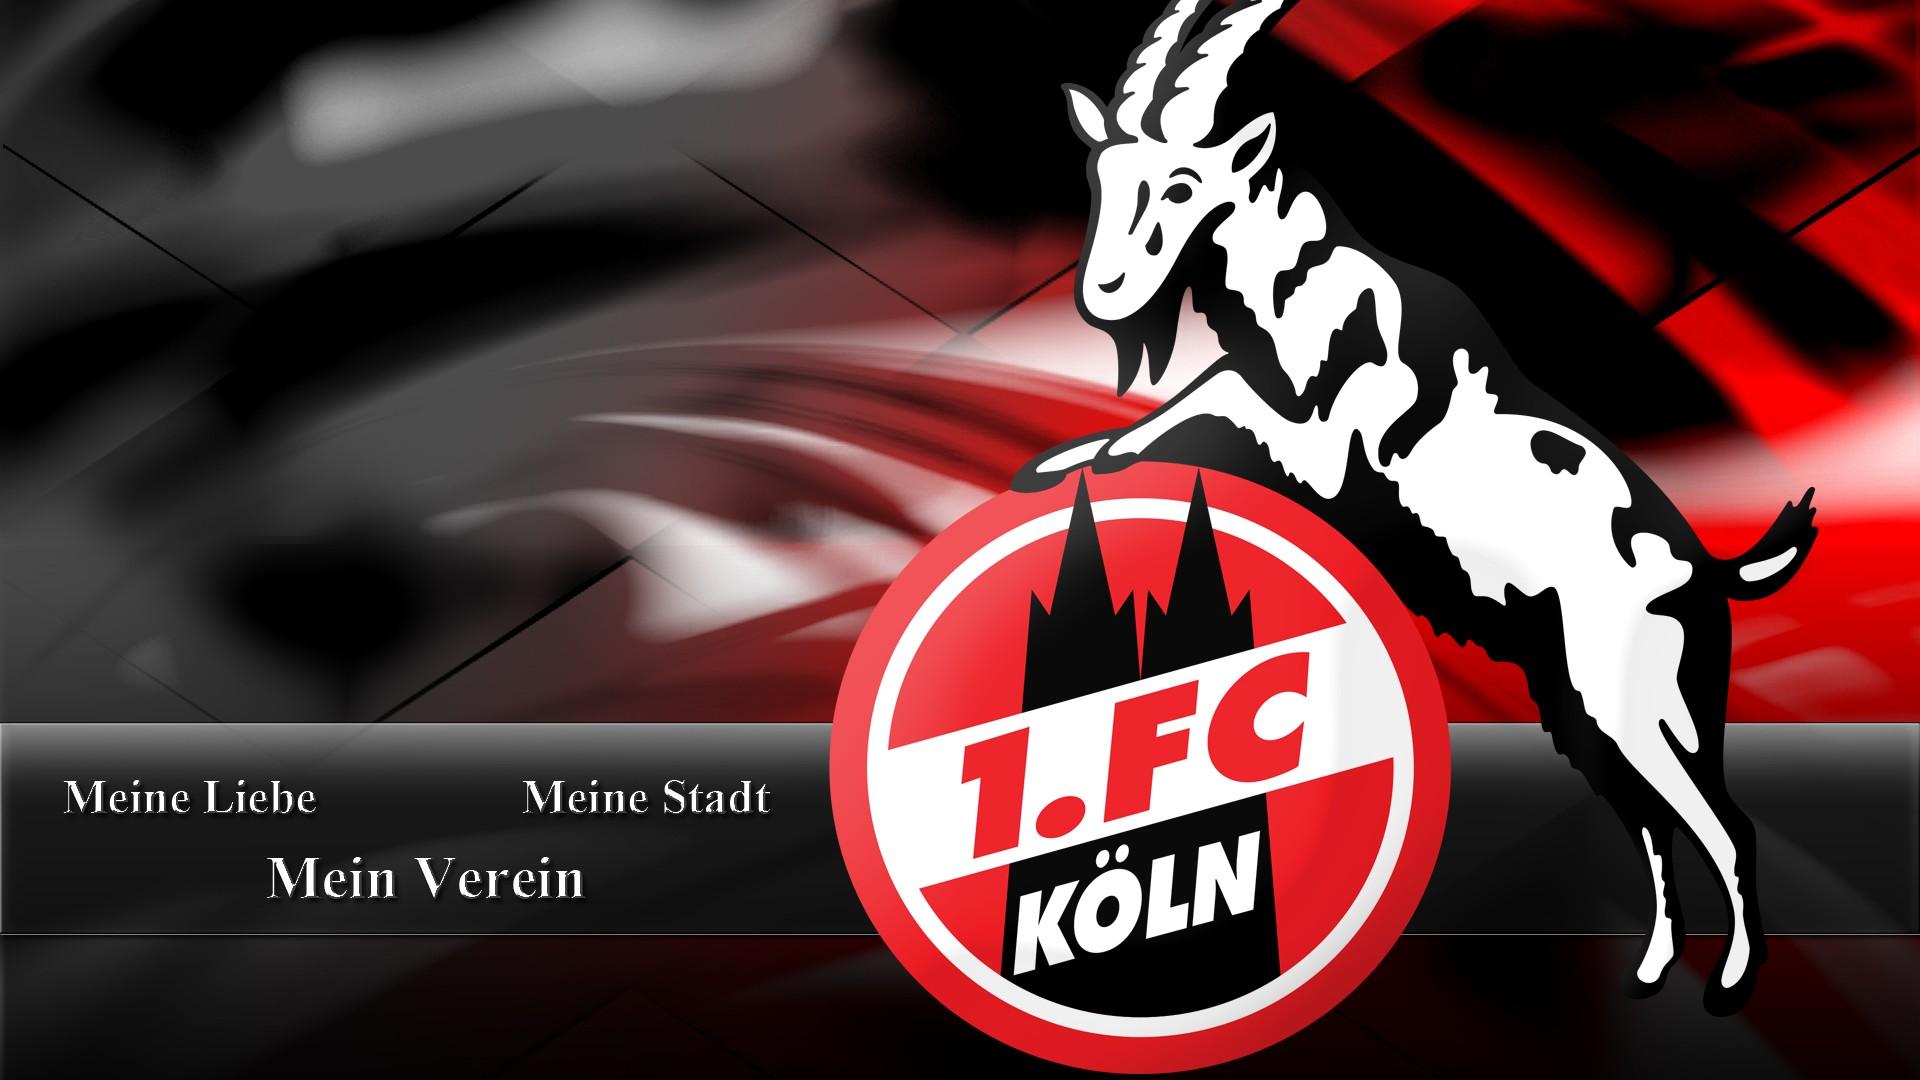 FC Köln 1920x1080 HD Wallpaper / Hintergrundbild